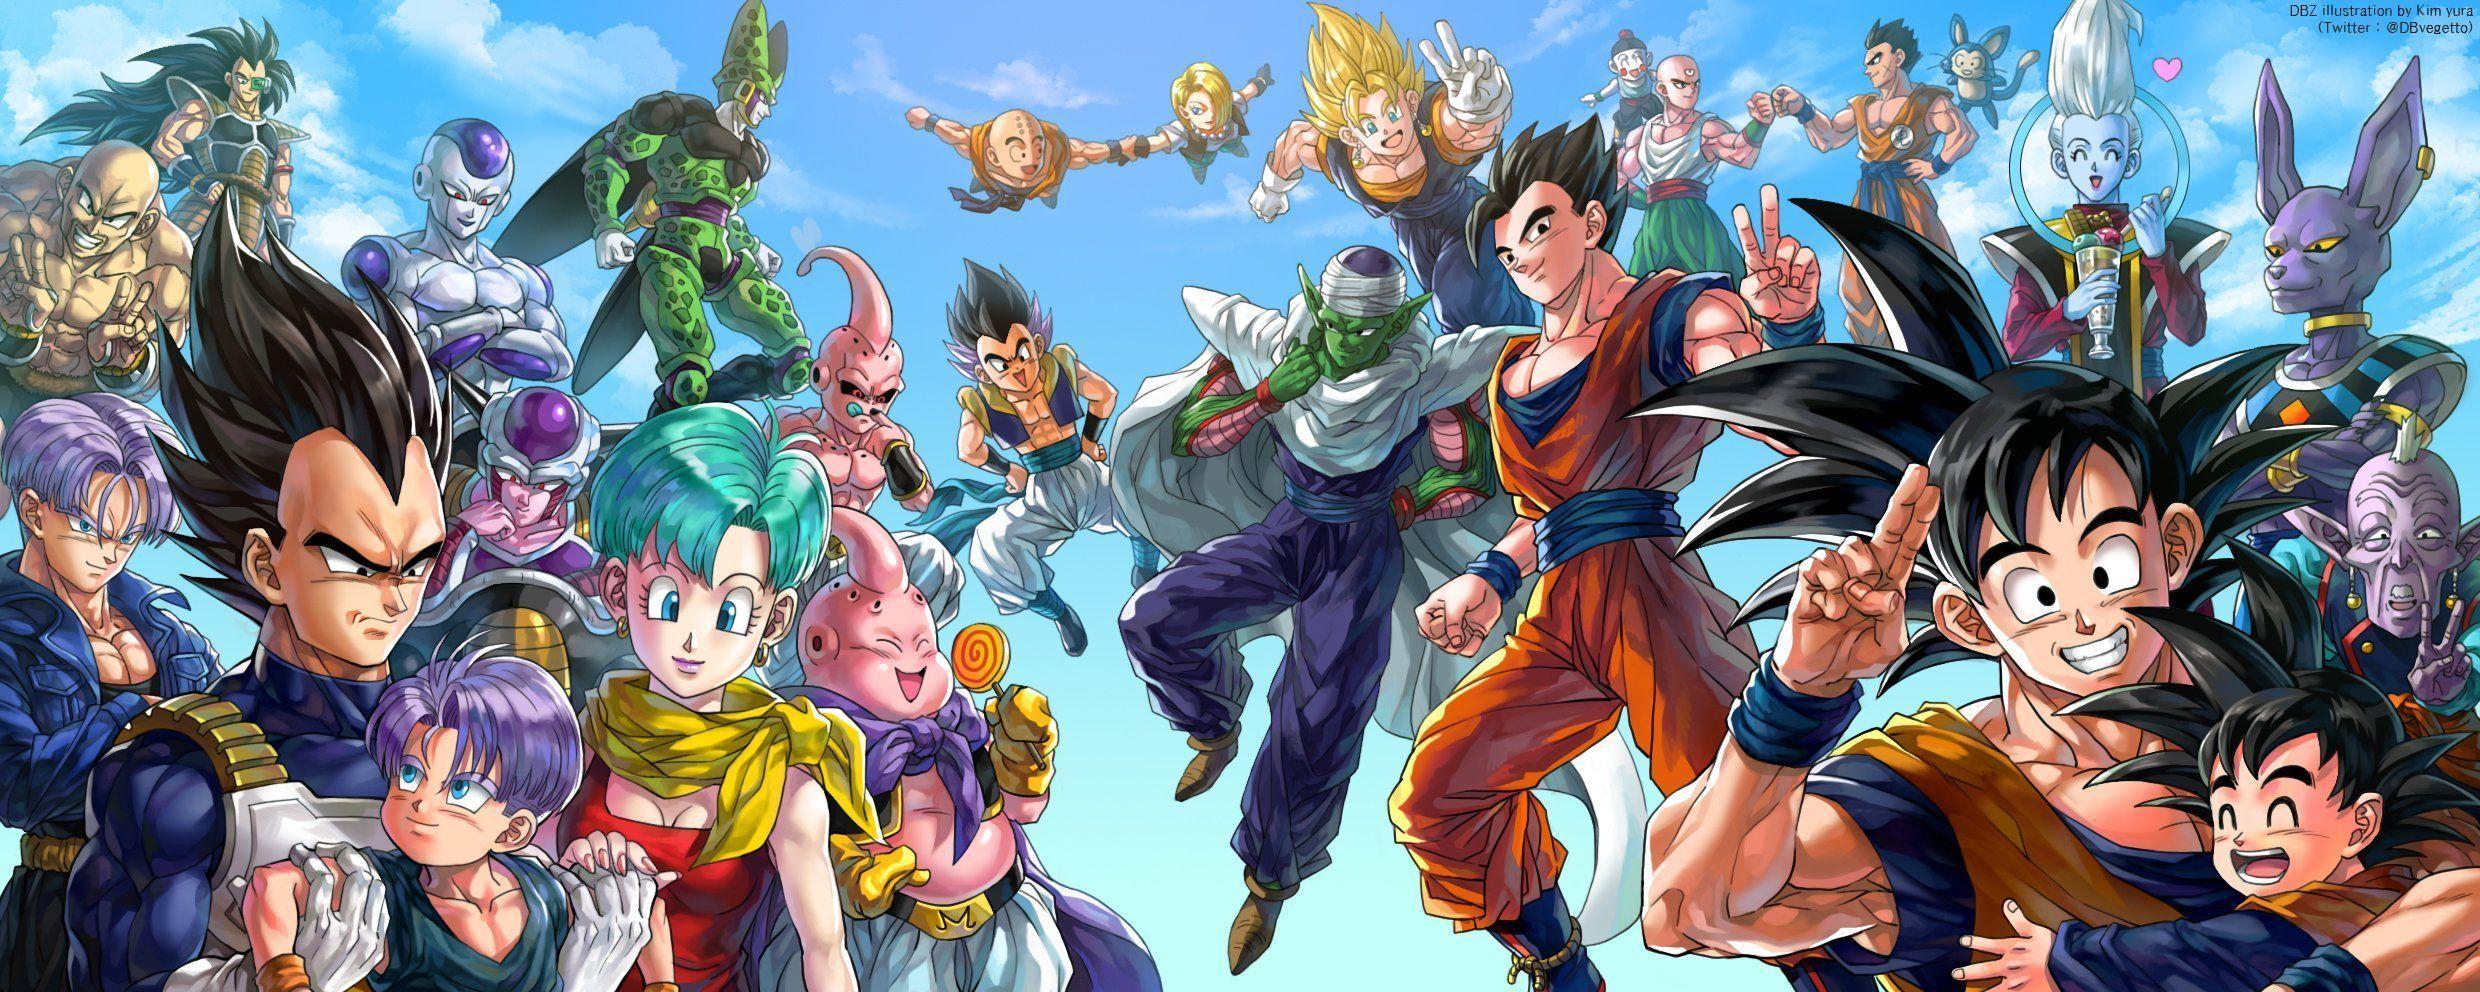 Vegeta Son Goku Dragonball Z 1600x900 Wallpaper Download